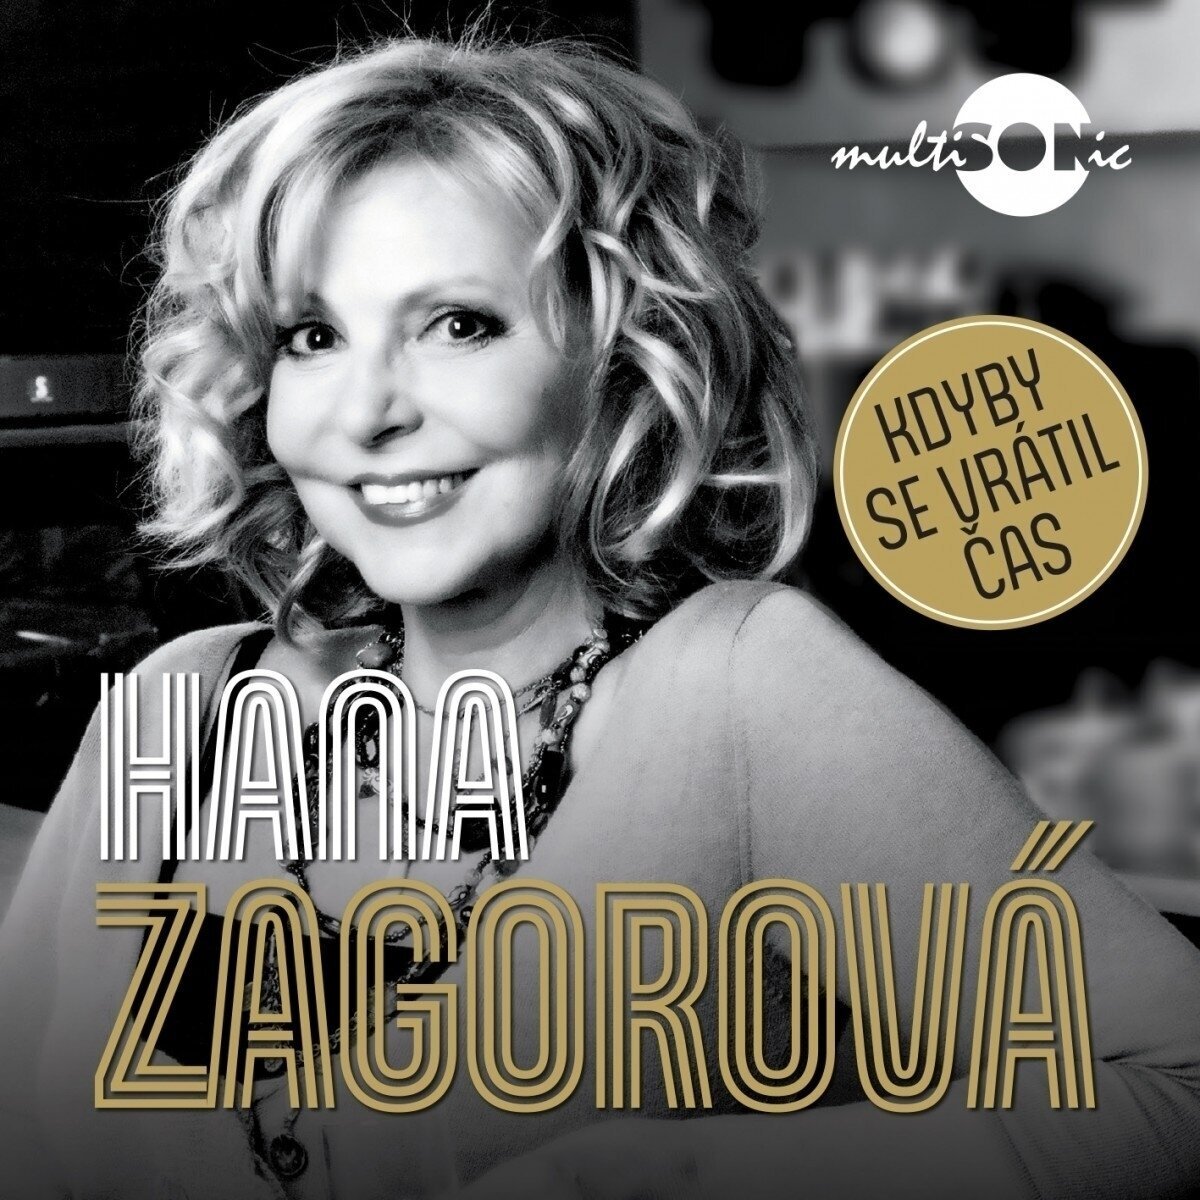 Vinylplade Hana Zagorová - Kdyby se vrátil čas (LP)